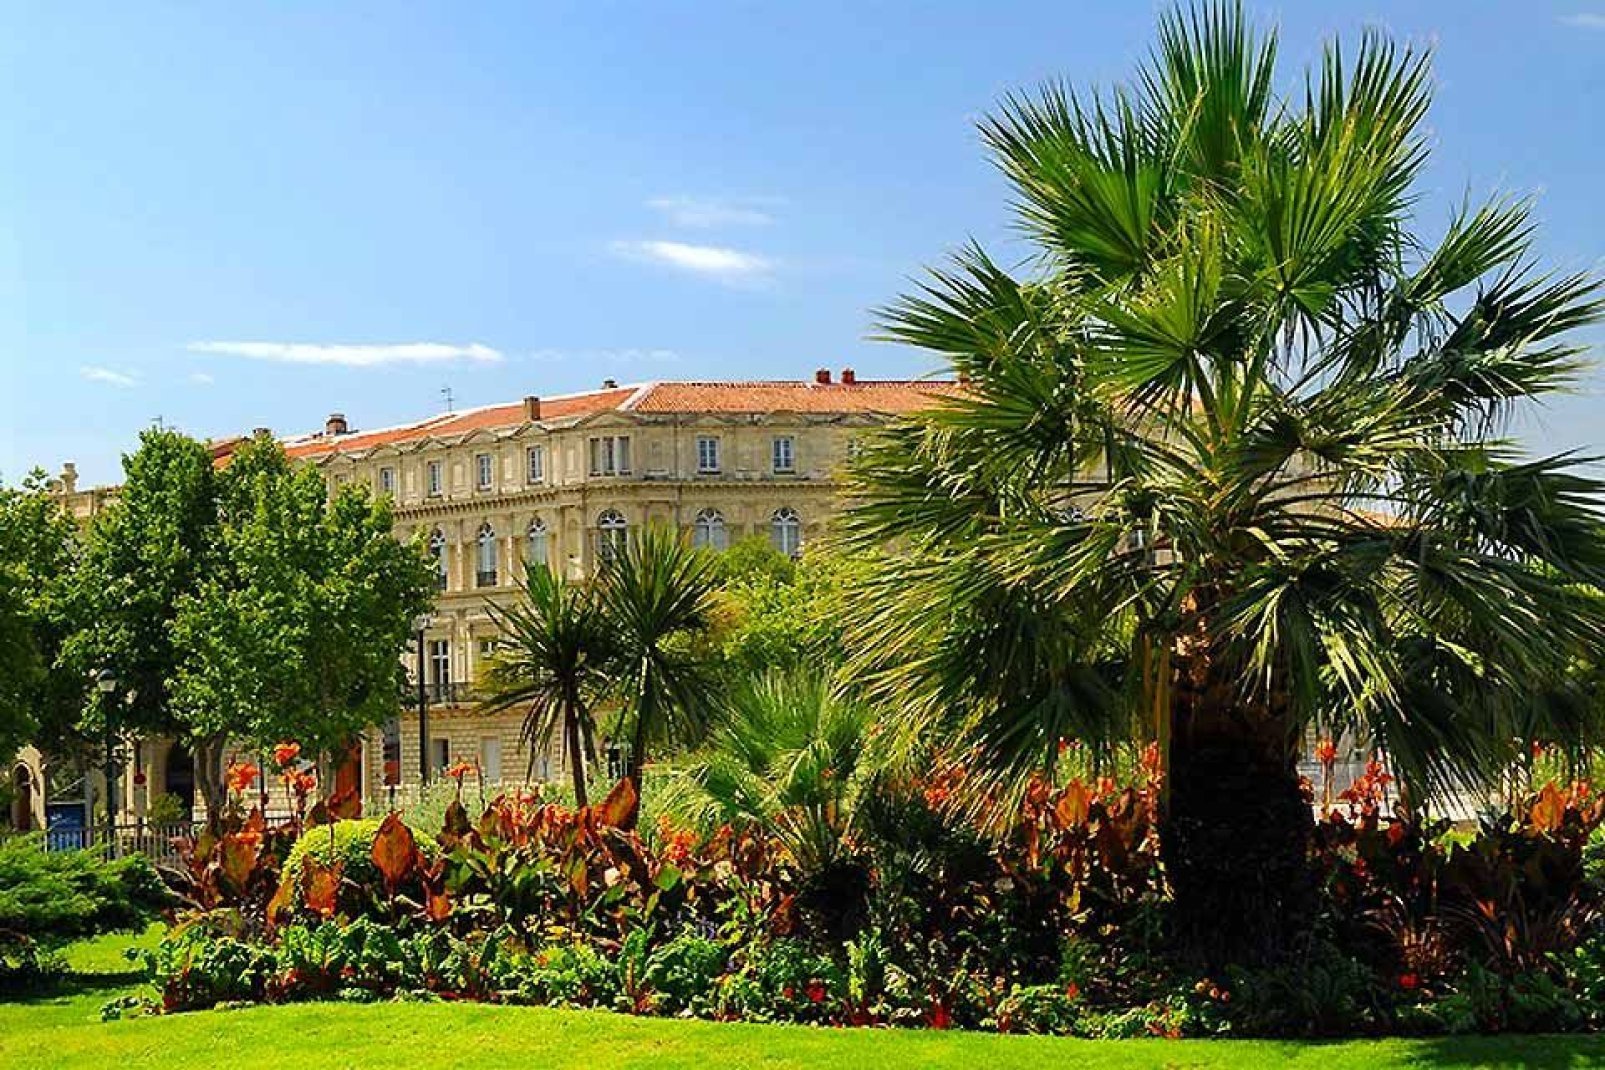 De nombreux parcs existent à Nîmes : Square des Courlis, Jardin Galilée, Domaine de la Bastide ? Autant d'endroits dont vous pouvez profiter avec vos proches.